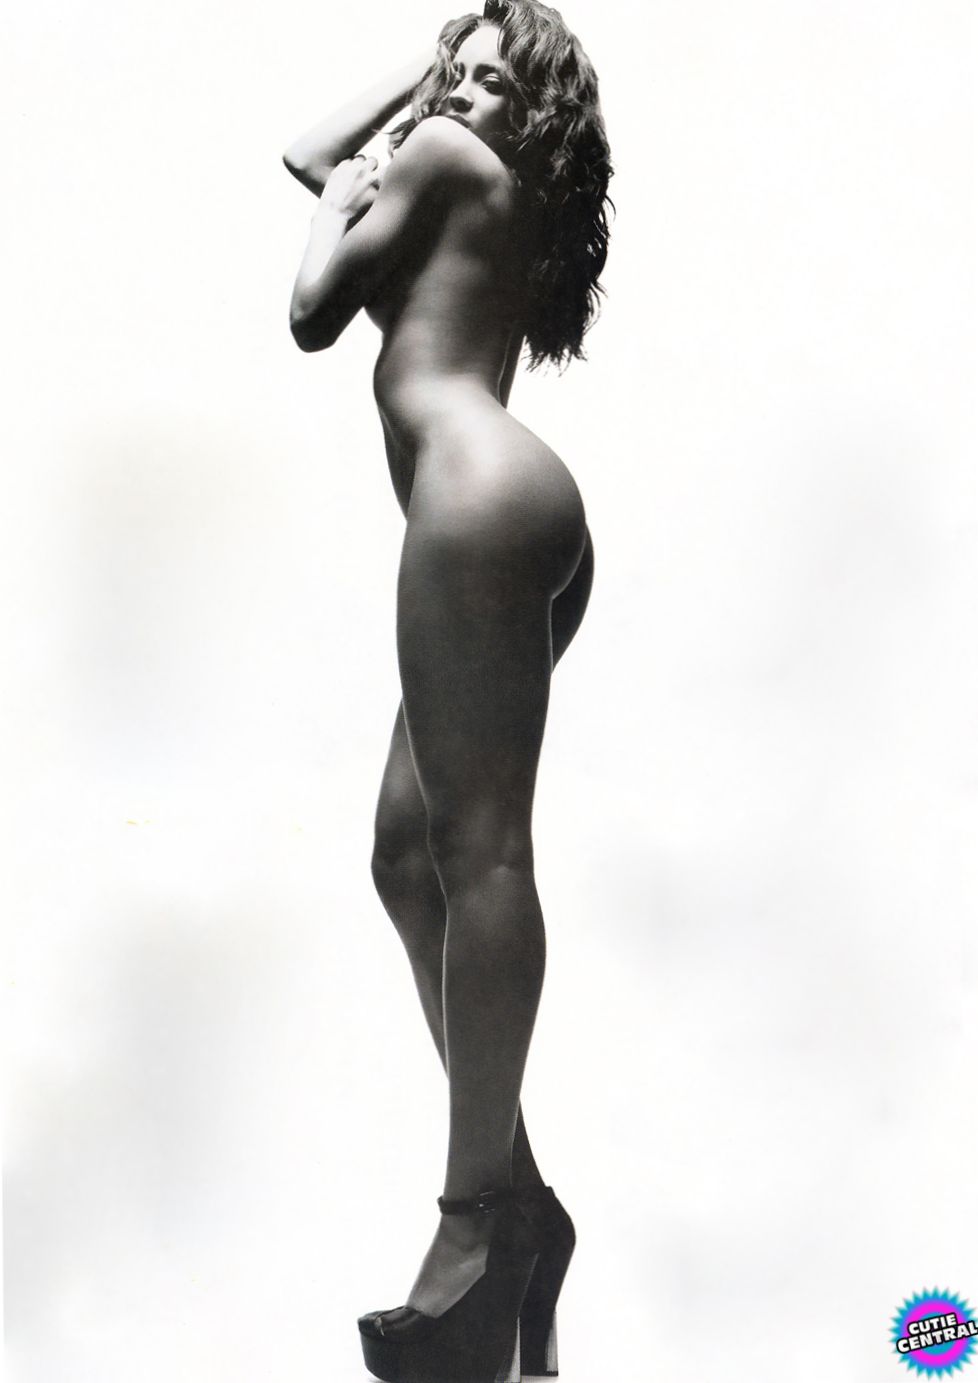 Ciara In The Nude 100